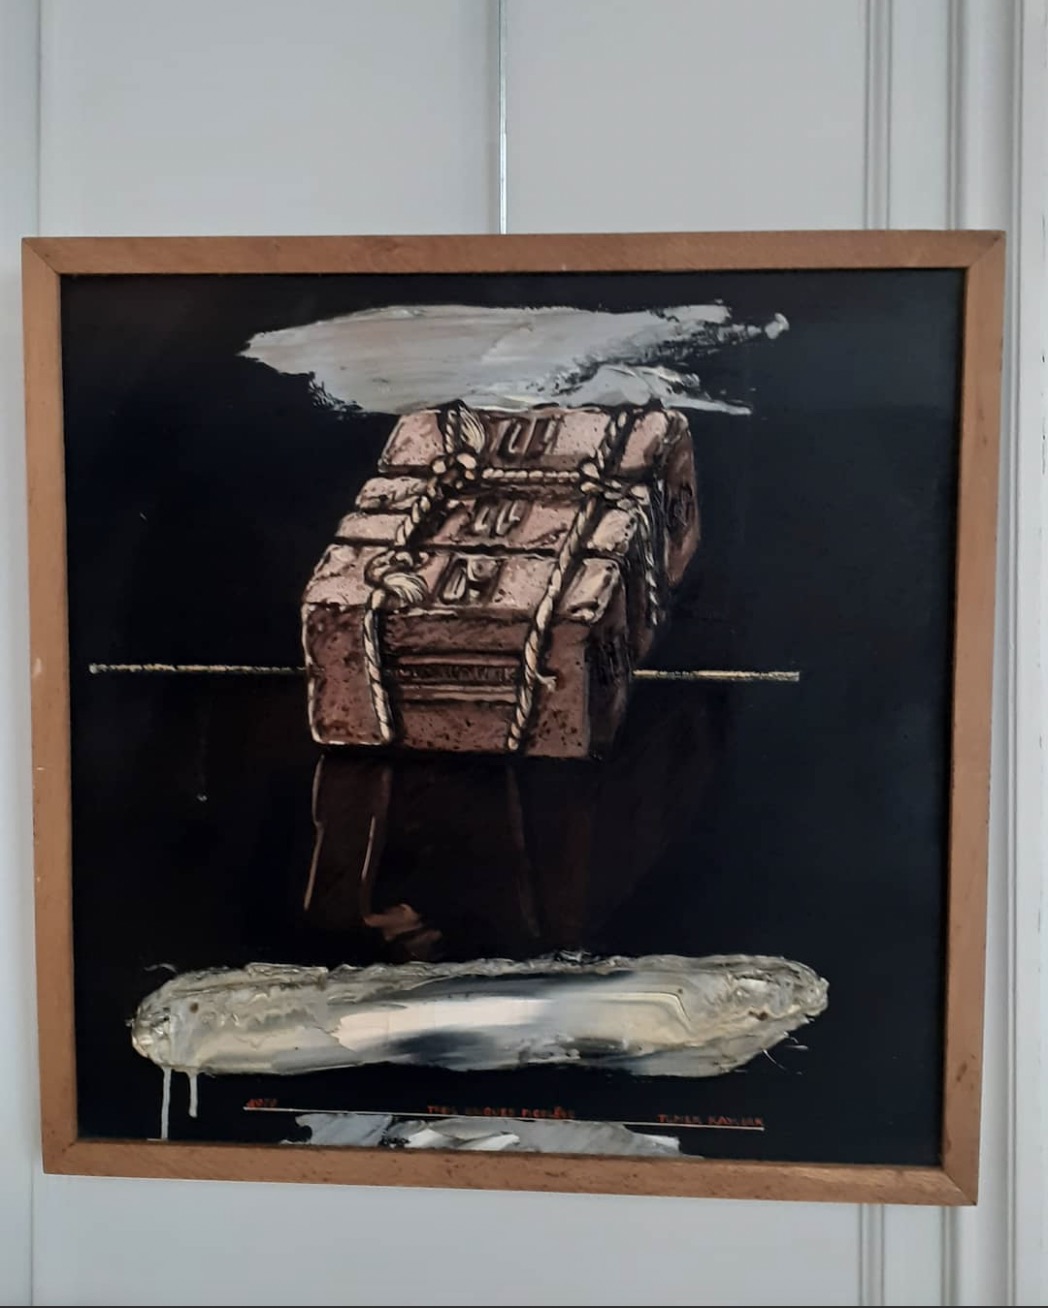 Oeuvre de la Galerie d'art Lille Antoine Delerive -Huile sur toile de Tomek Kawiak de 1979 où l'on distingue une valise au dessus du sol